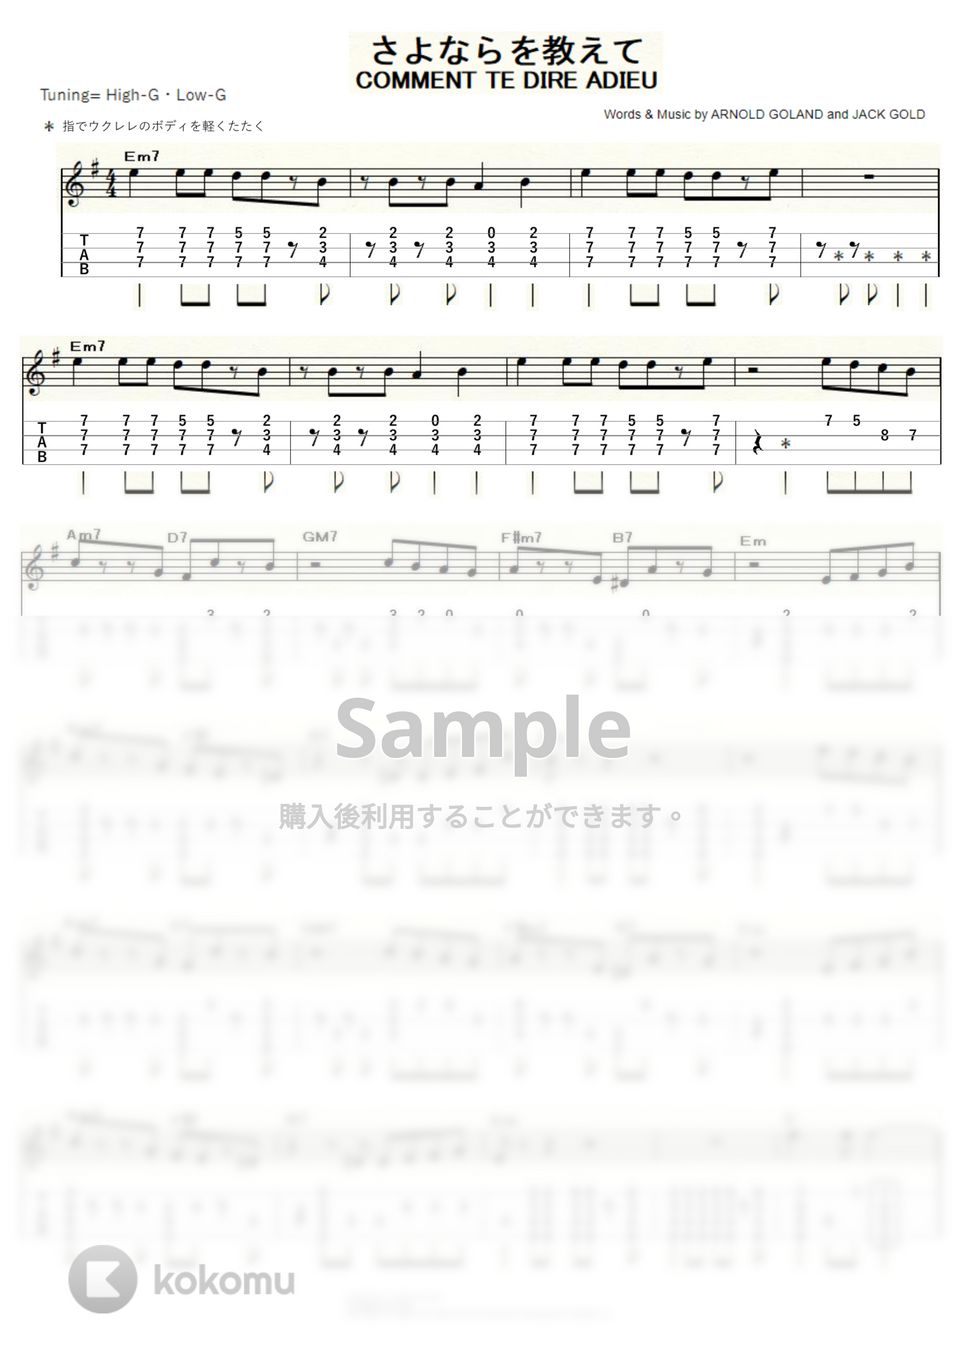 フランソワーズ・アルディ - さよならを教えて (ｳｸﾚﾚｿﾛ / High-G・Low-G / 中級) by ukulelepapa